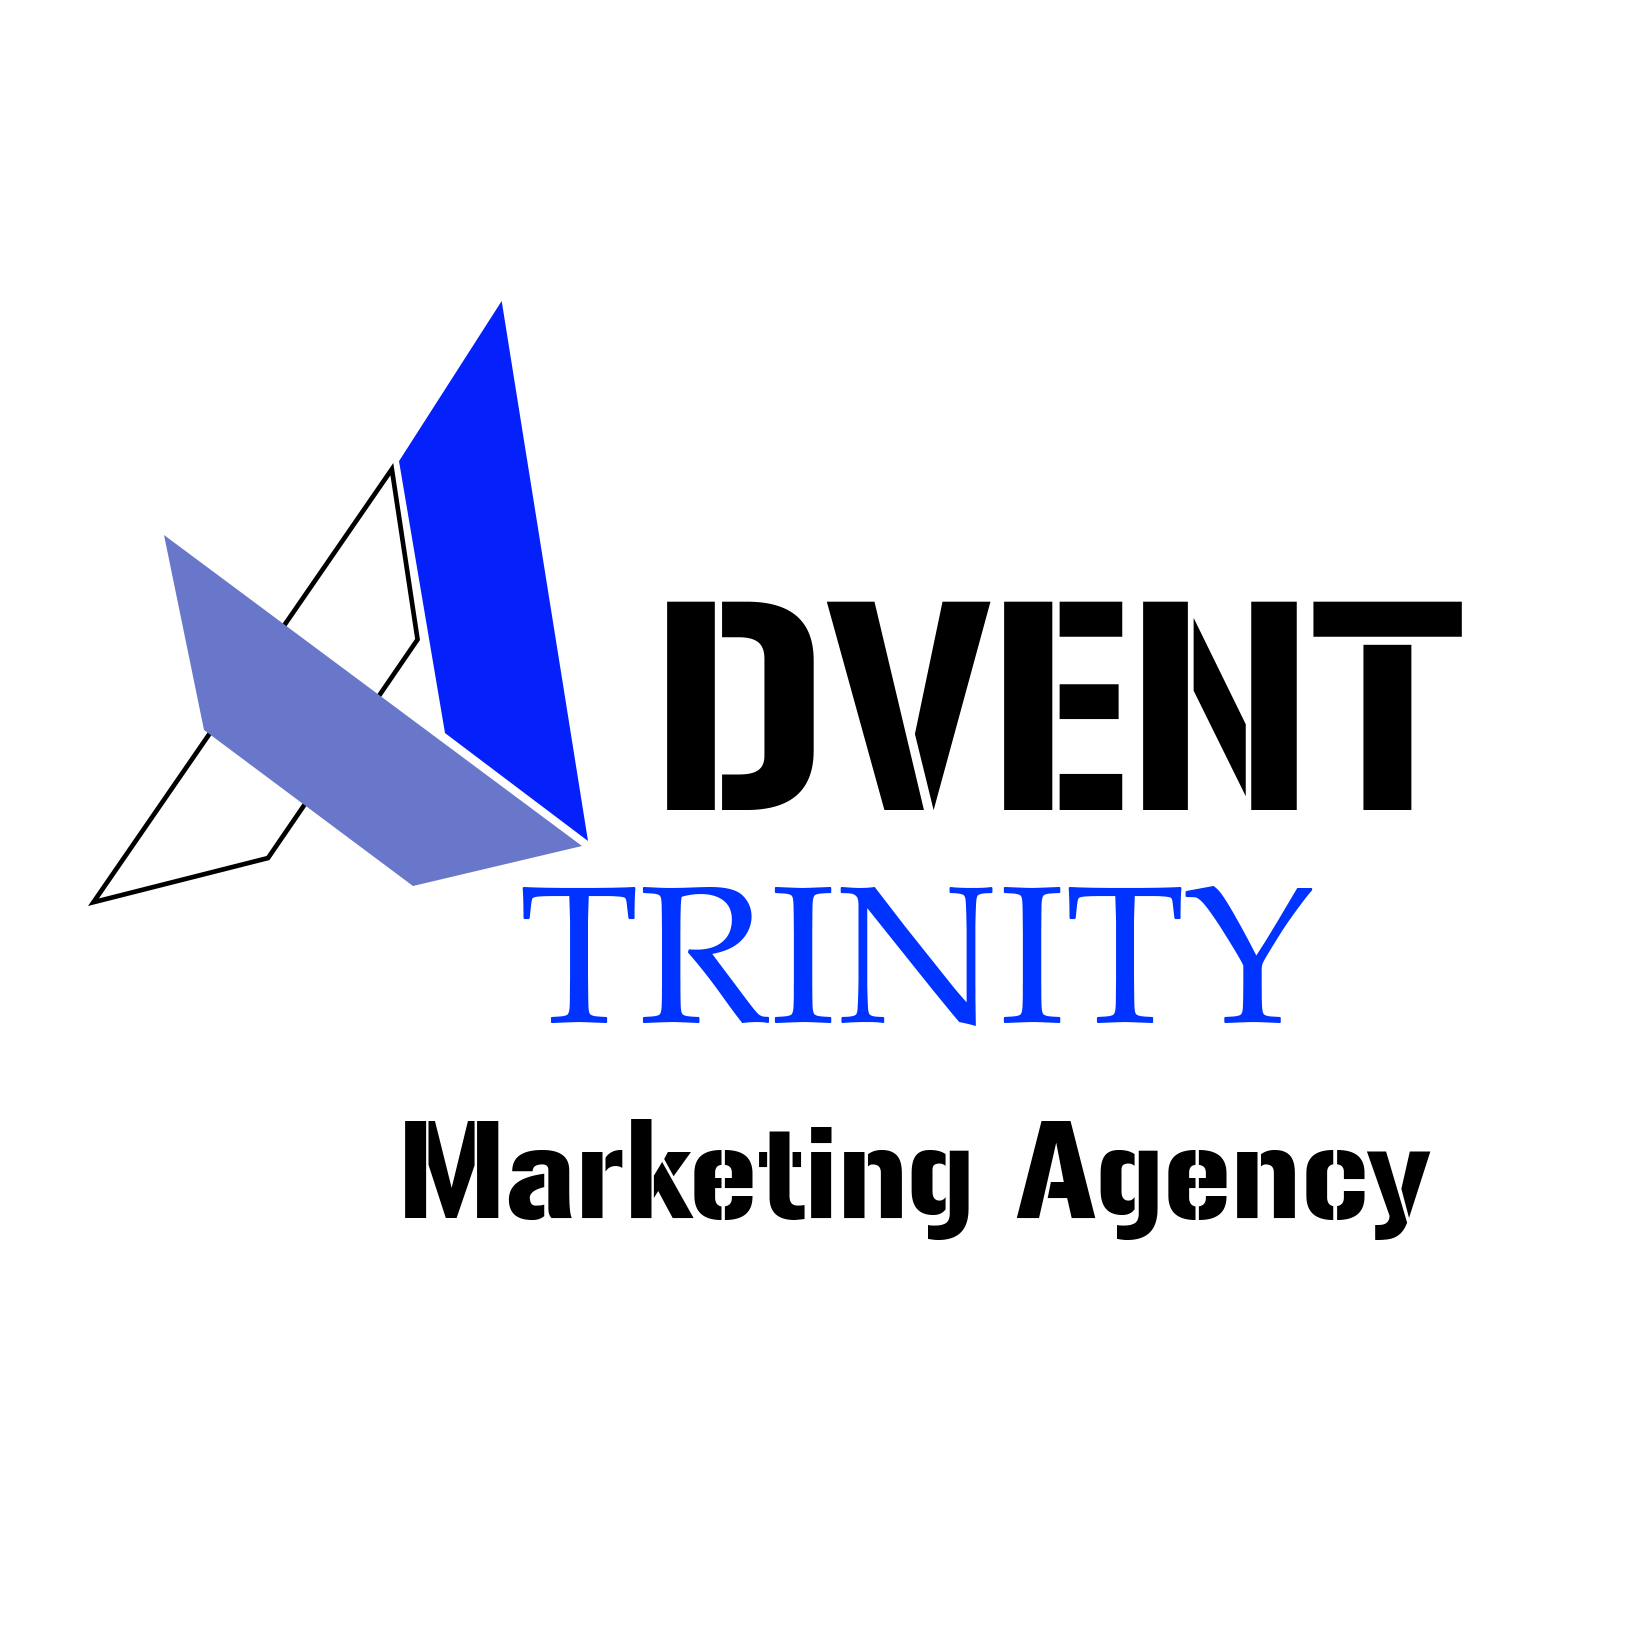 Advent Trinity Marketing Agency Photo